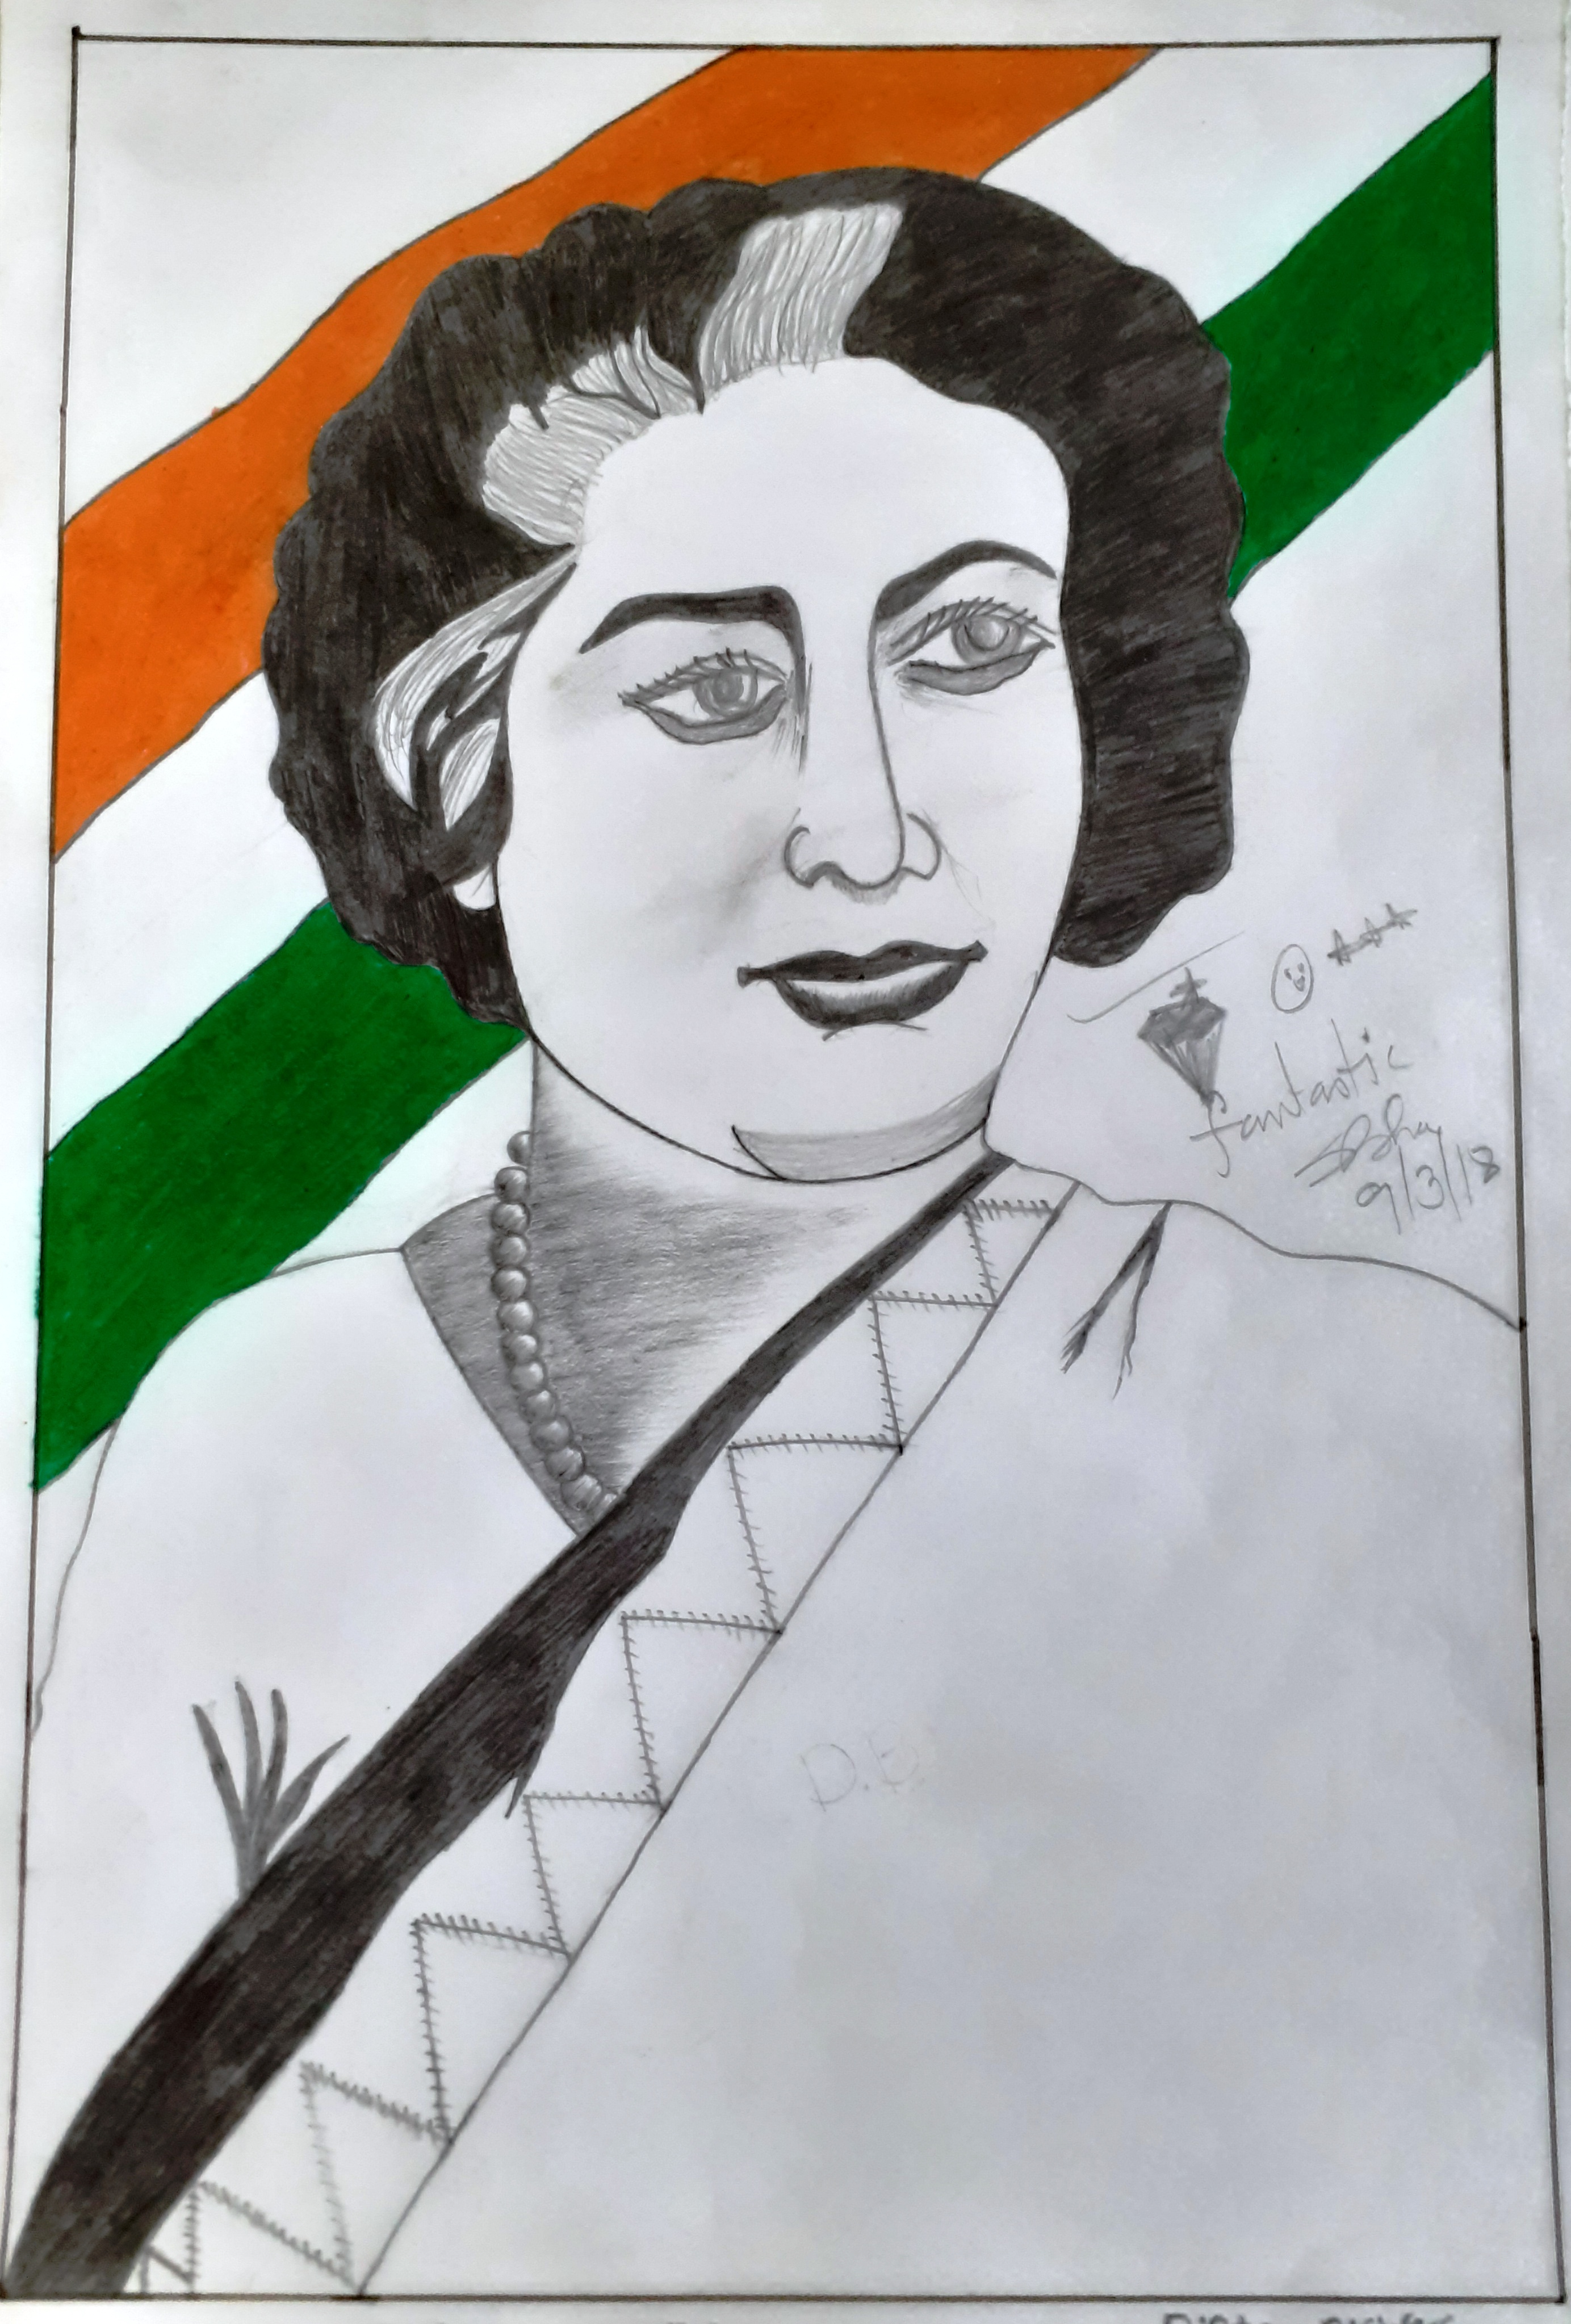 Gods-Leaders-Images-Drawings: Indira Gandhi